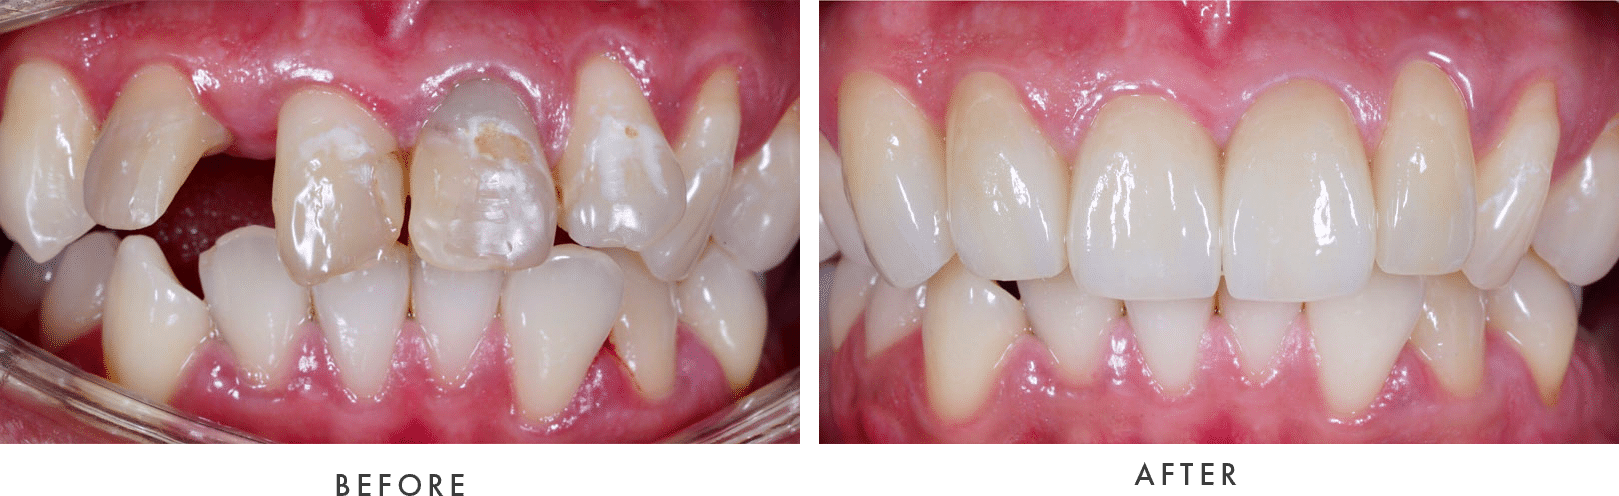 dental implant result